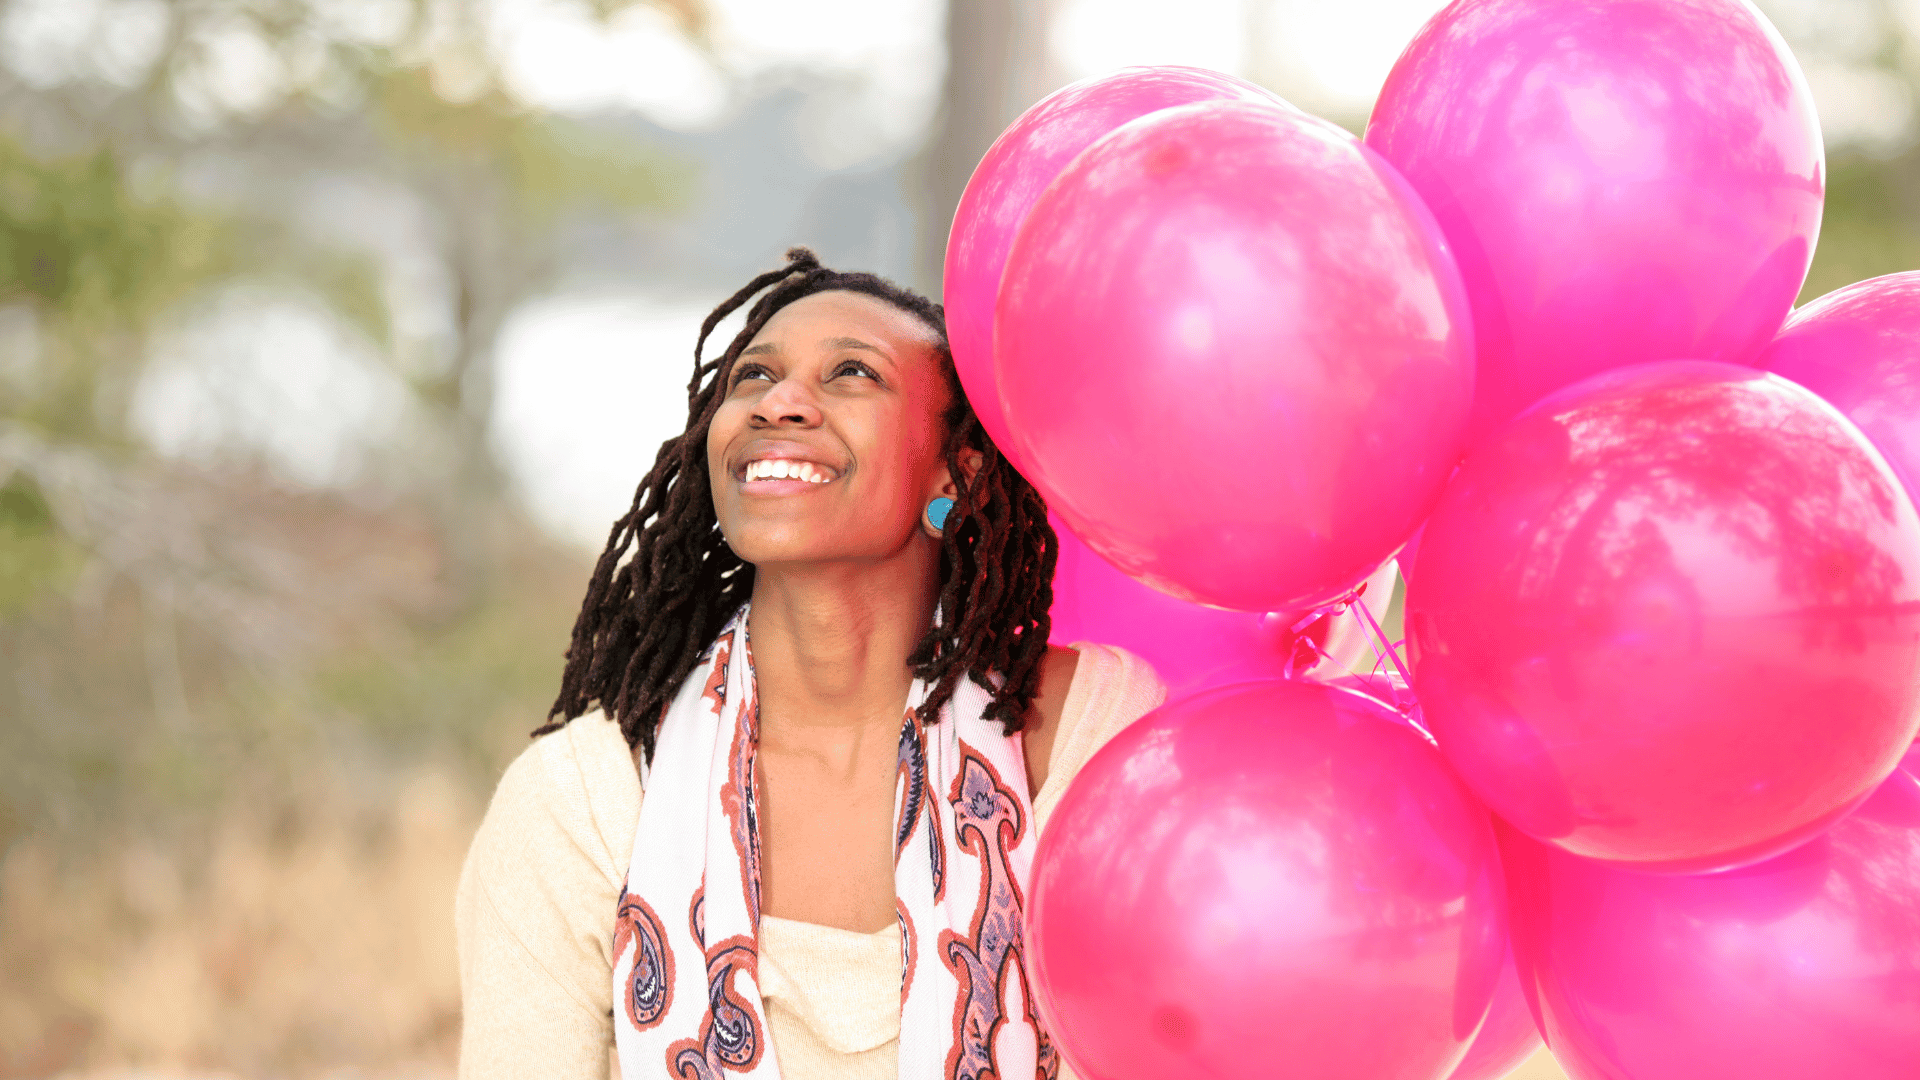 Mulher negra sorrindo segurando balões rosa em seu aniversário.